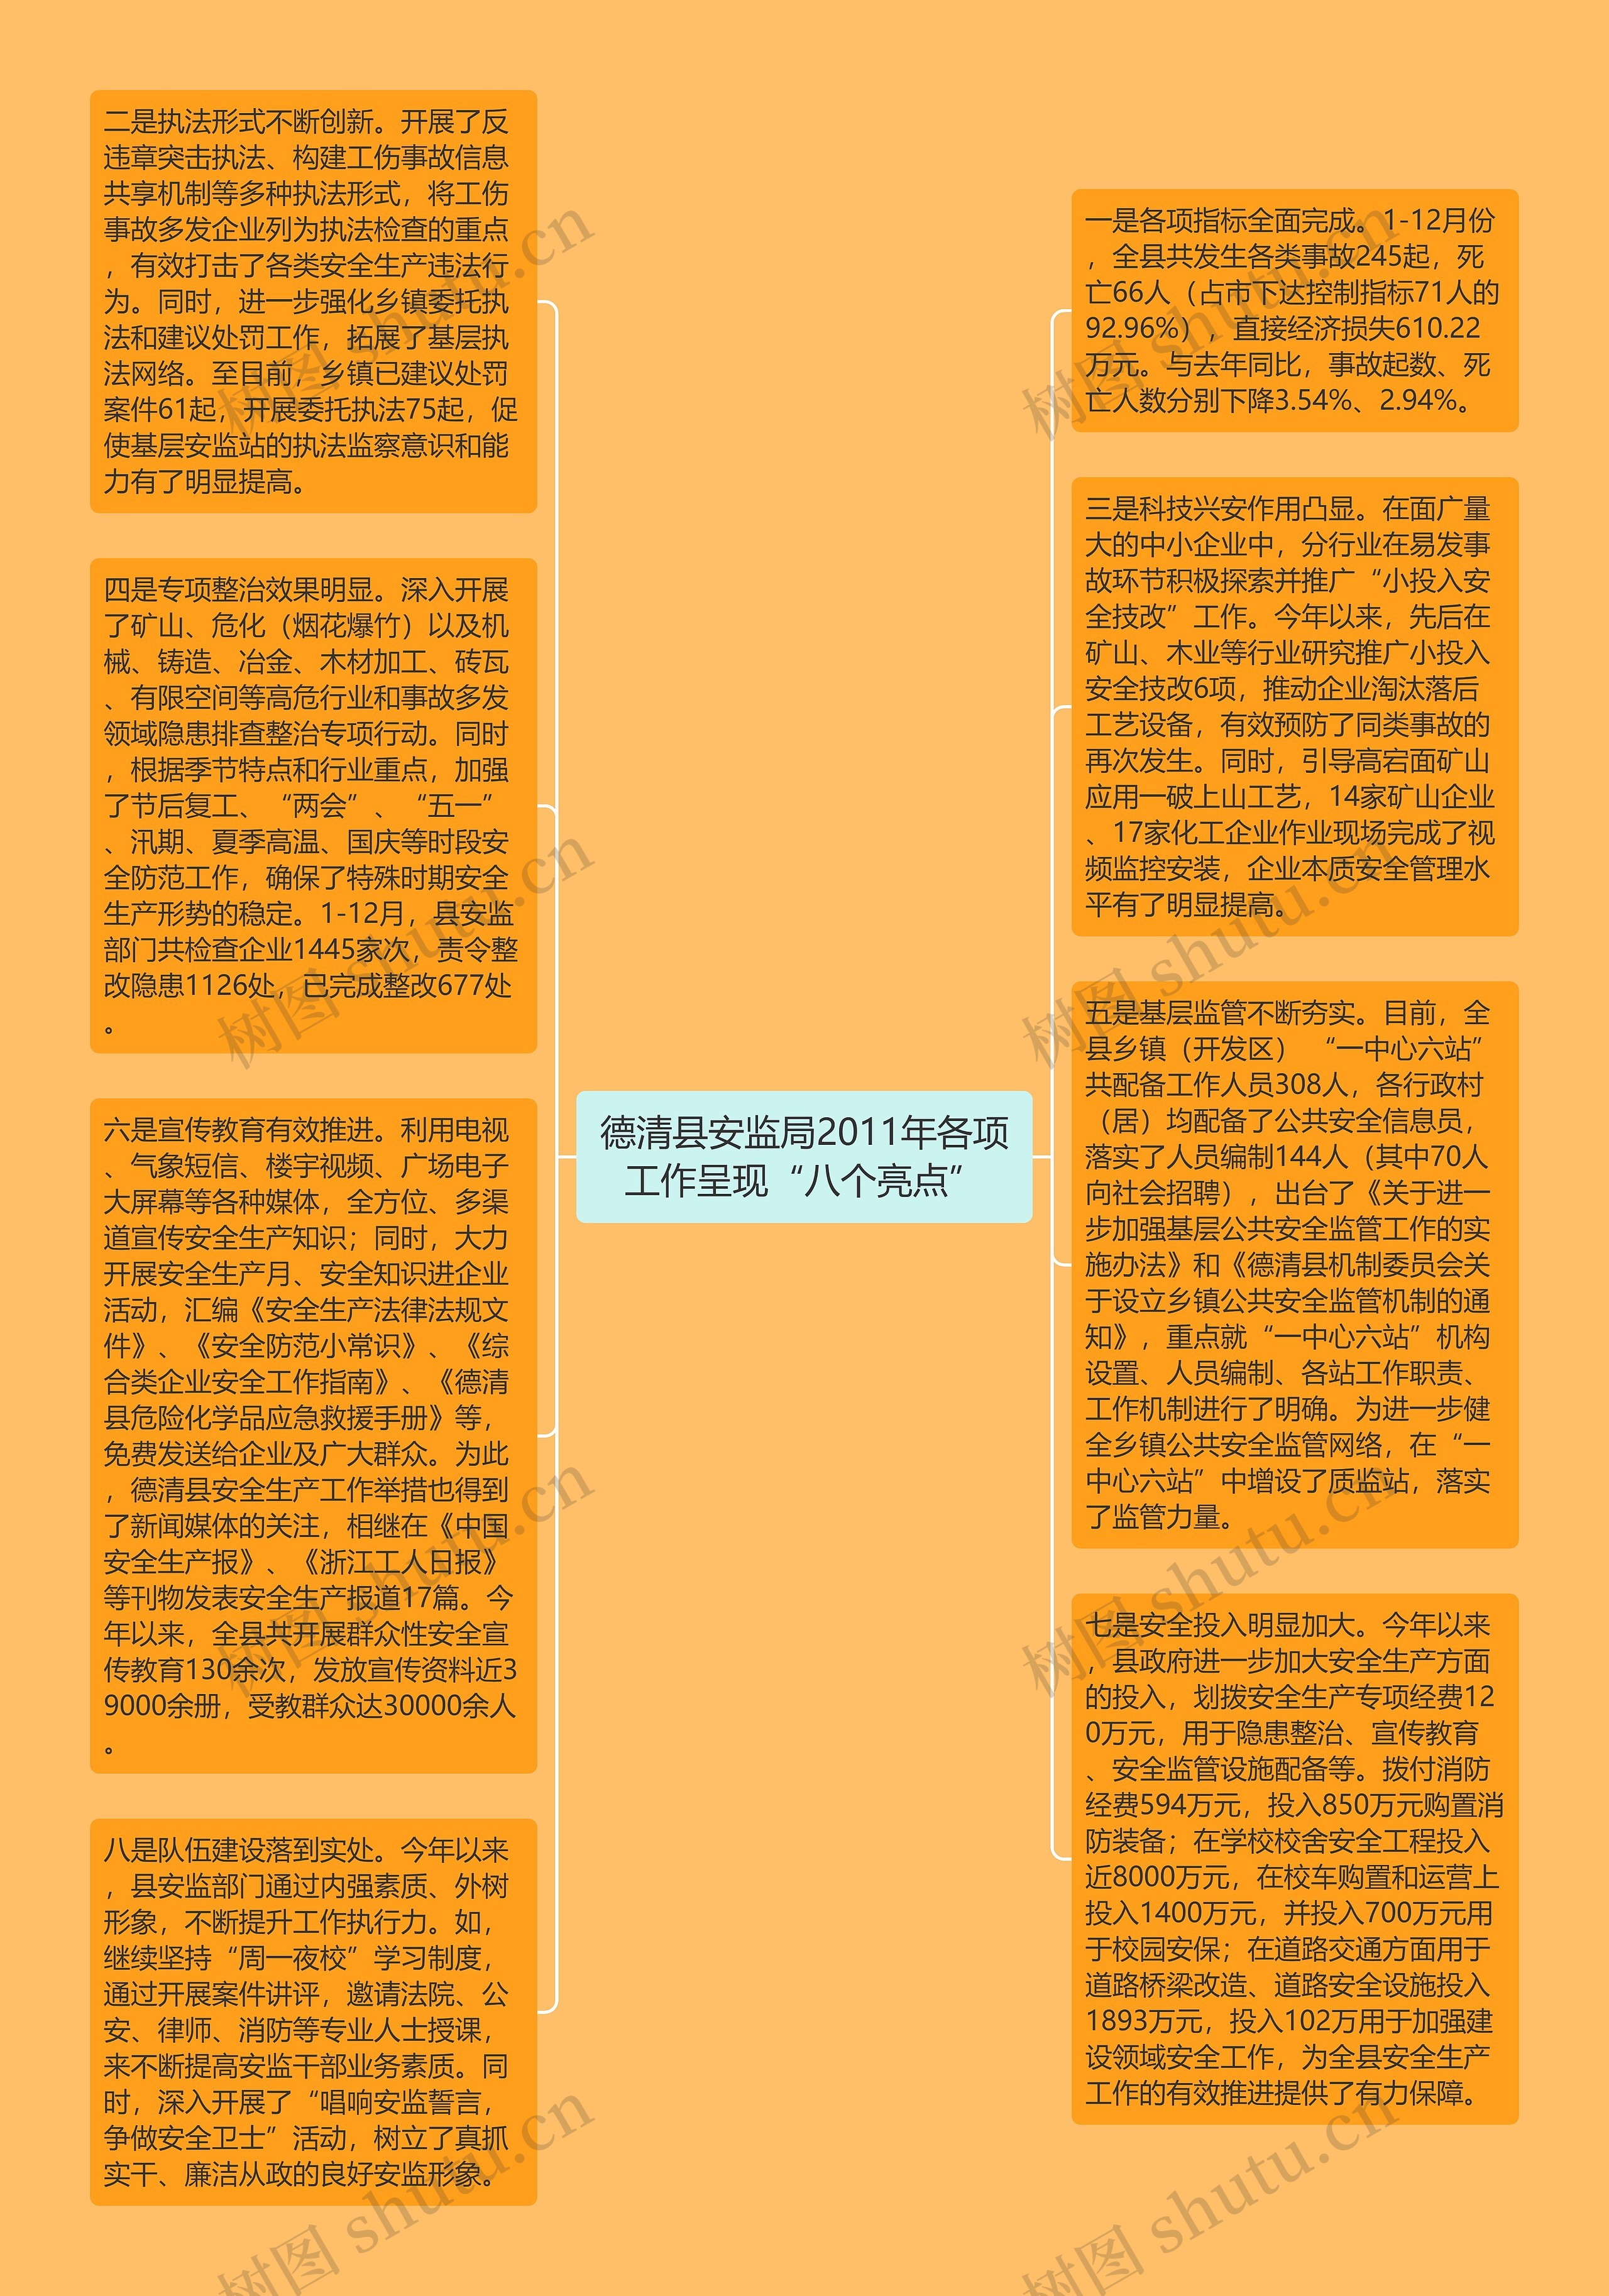 德清县安监局2011年各项工作呈现“八个亮点”